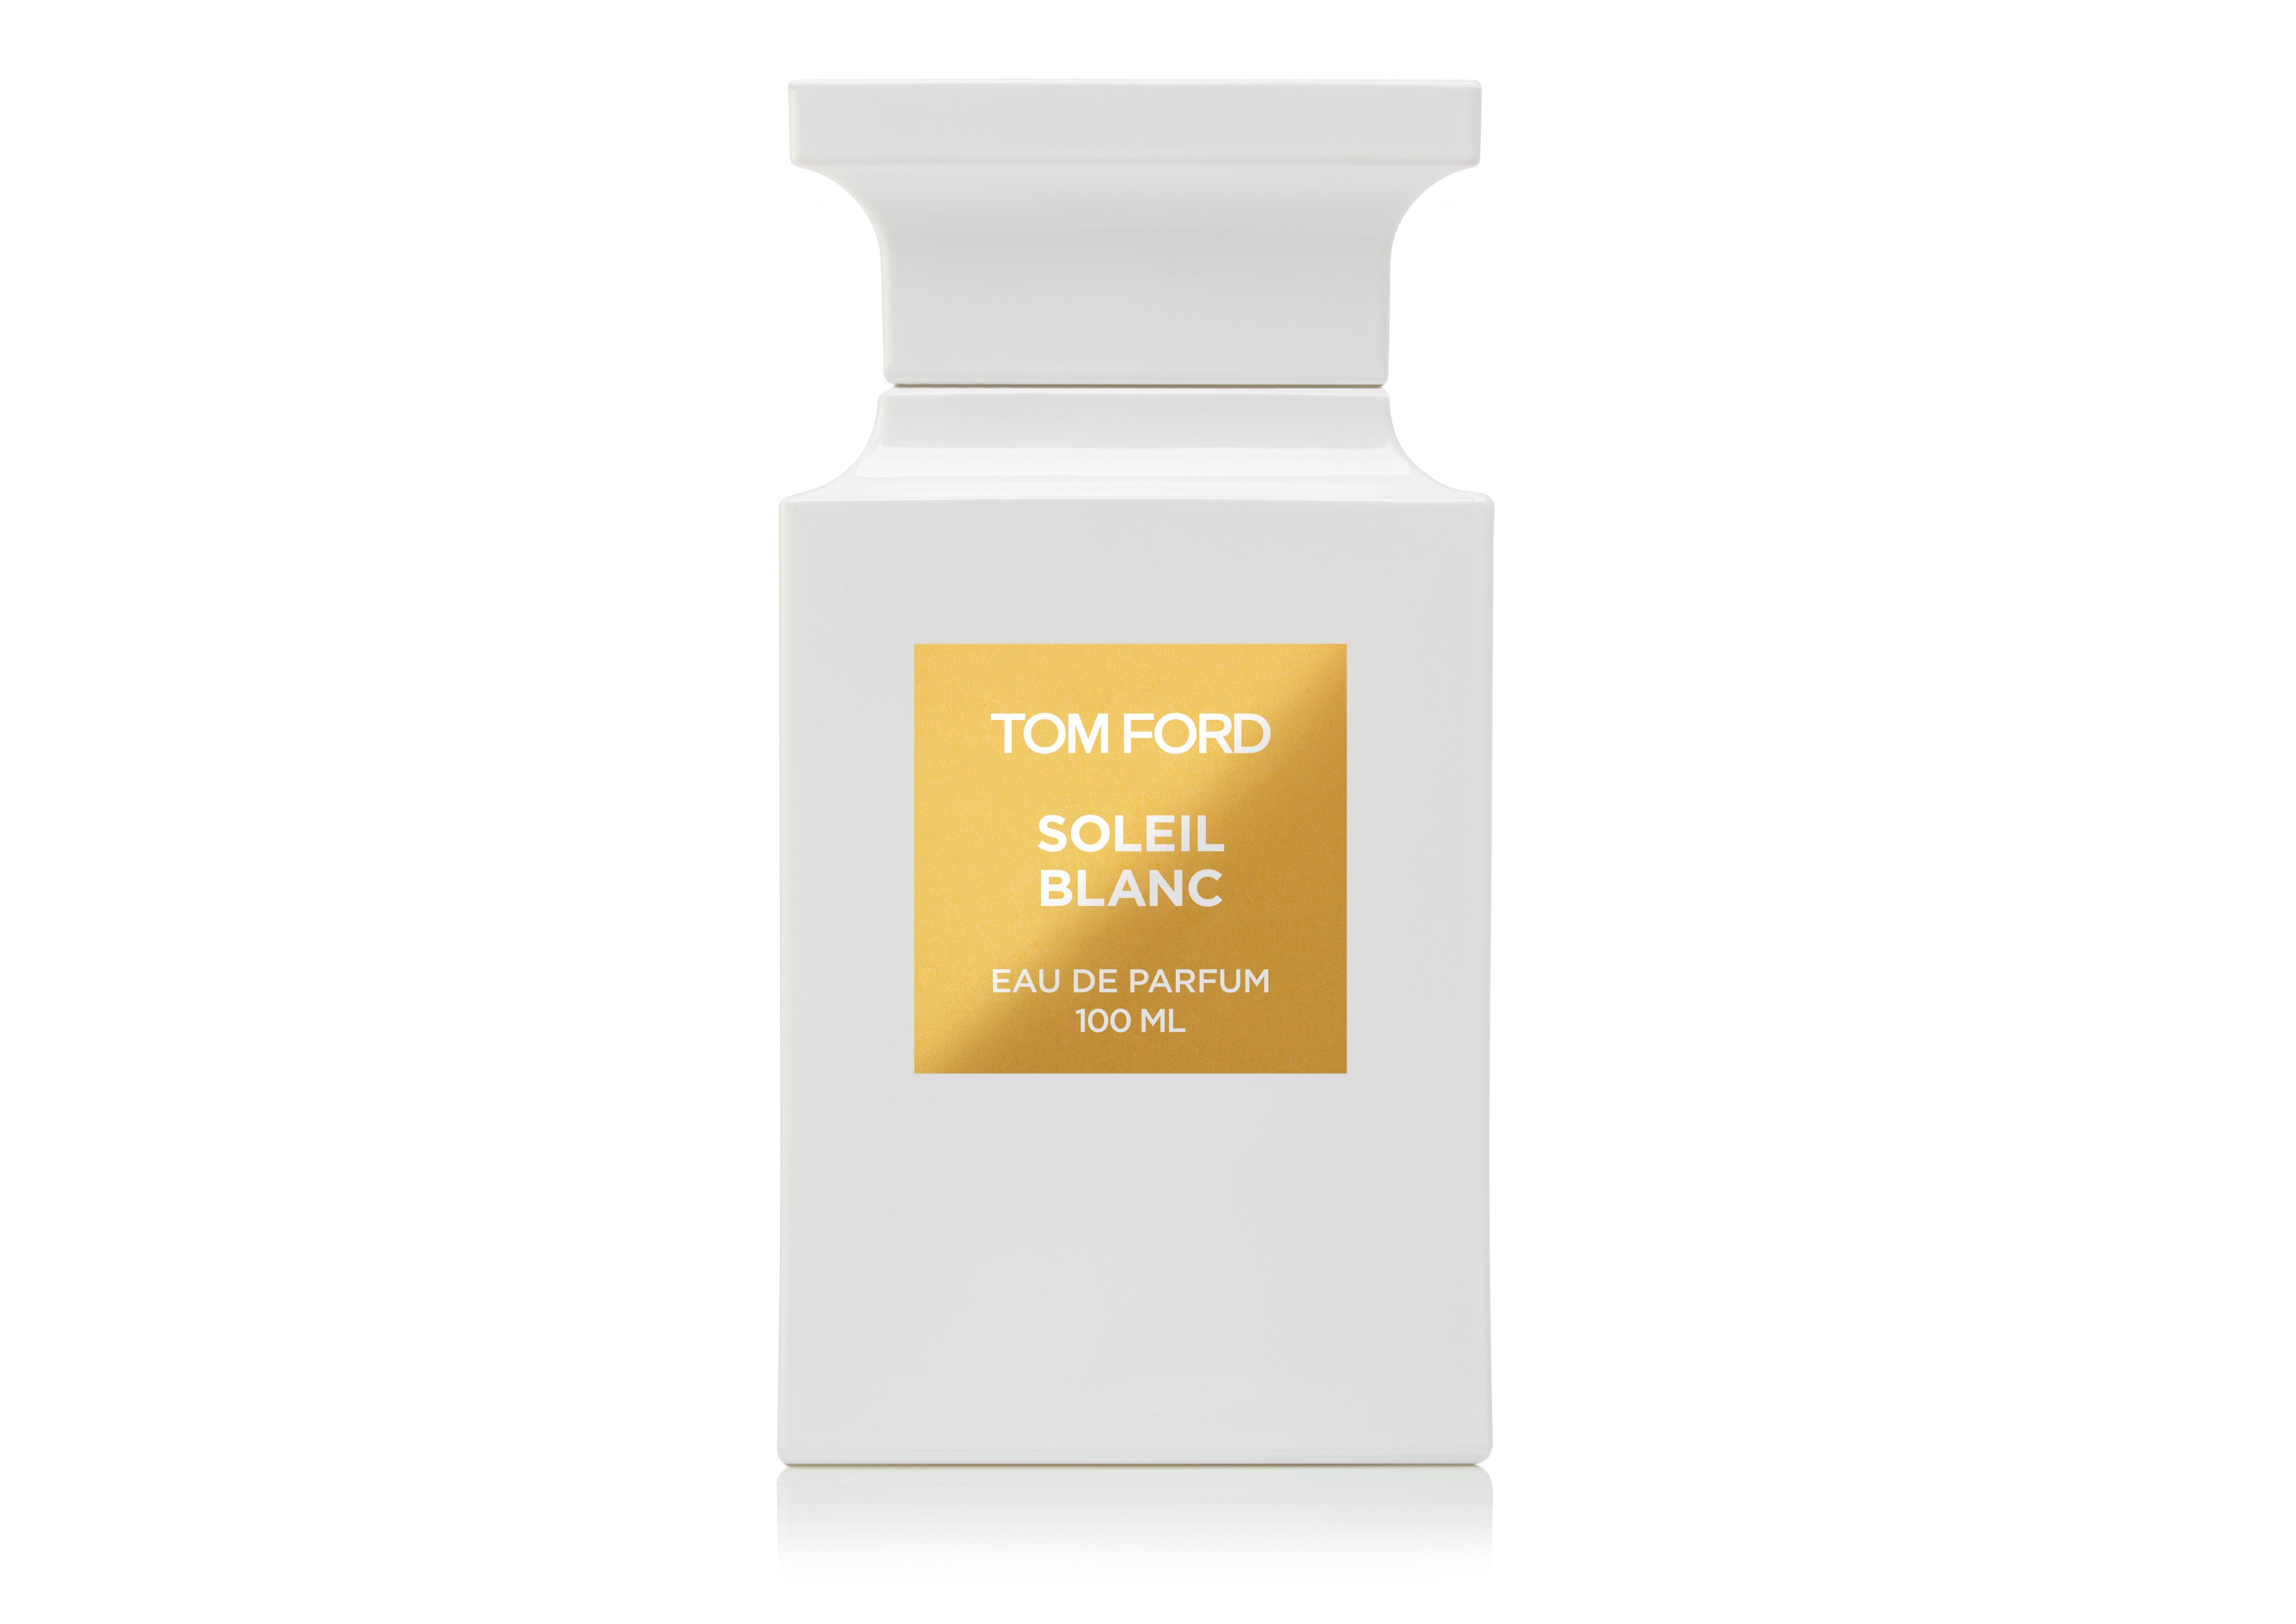 tom ford gold bottle perfume